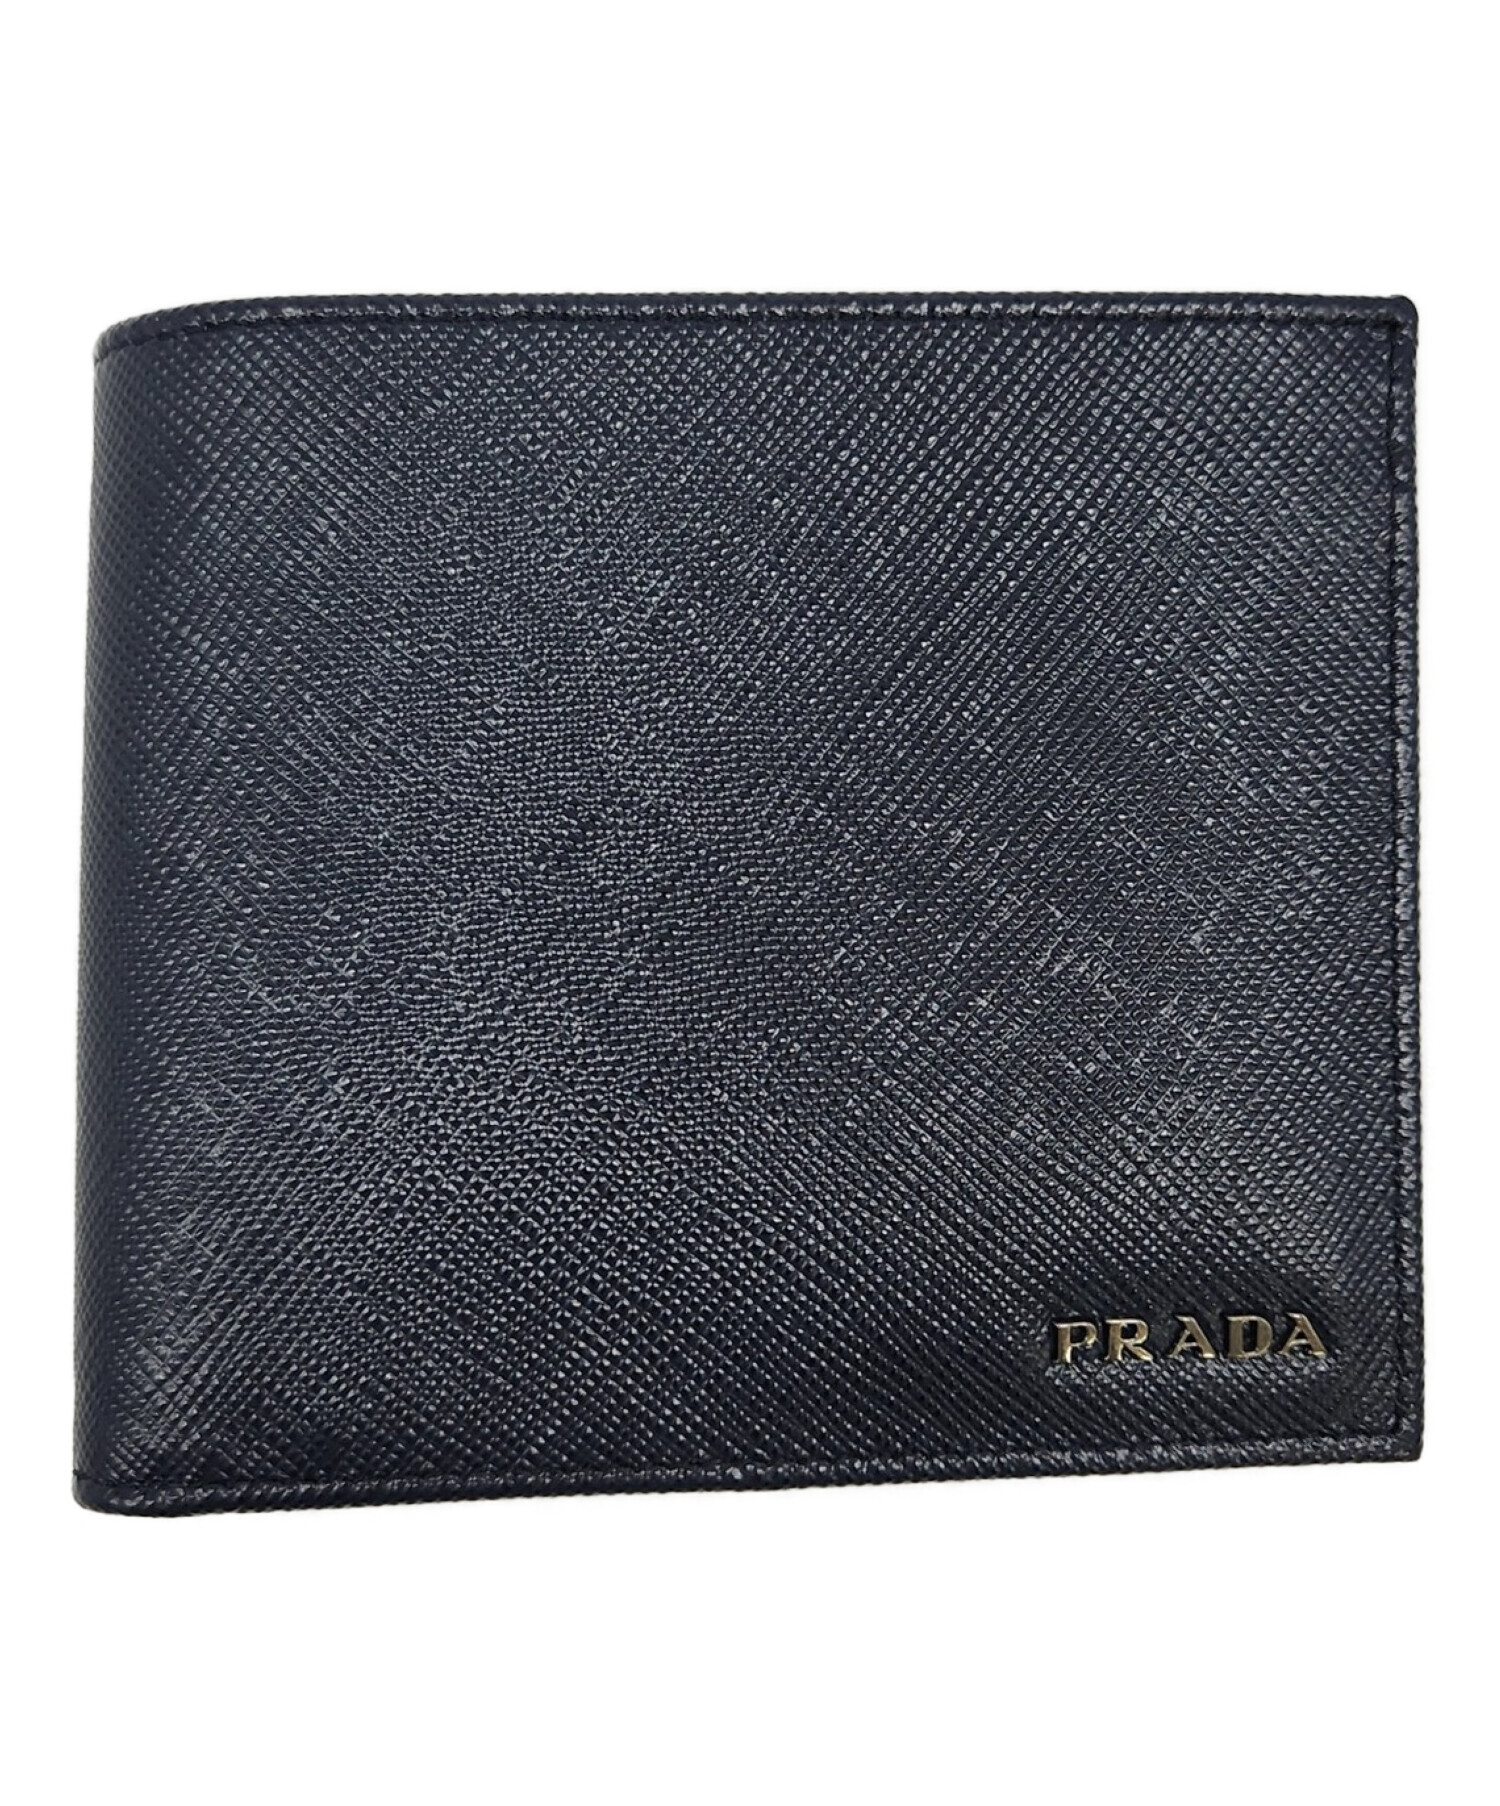 プラダ 二つ折り財布 ブラック PRADA - 小物